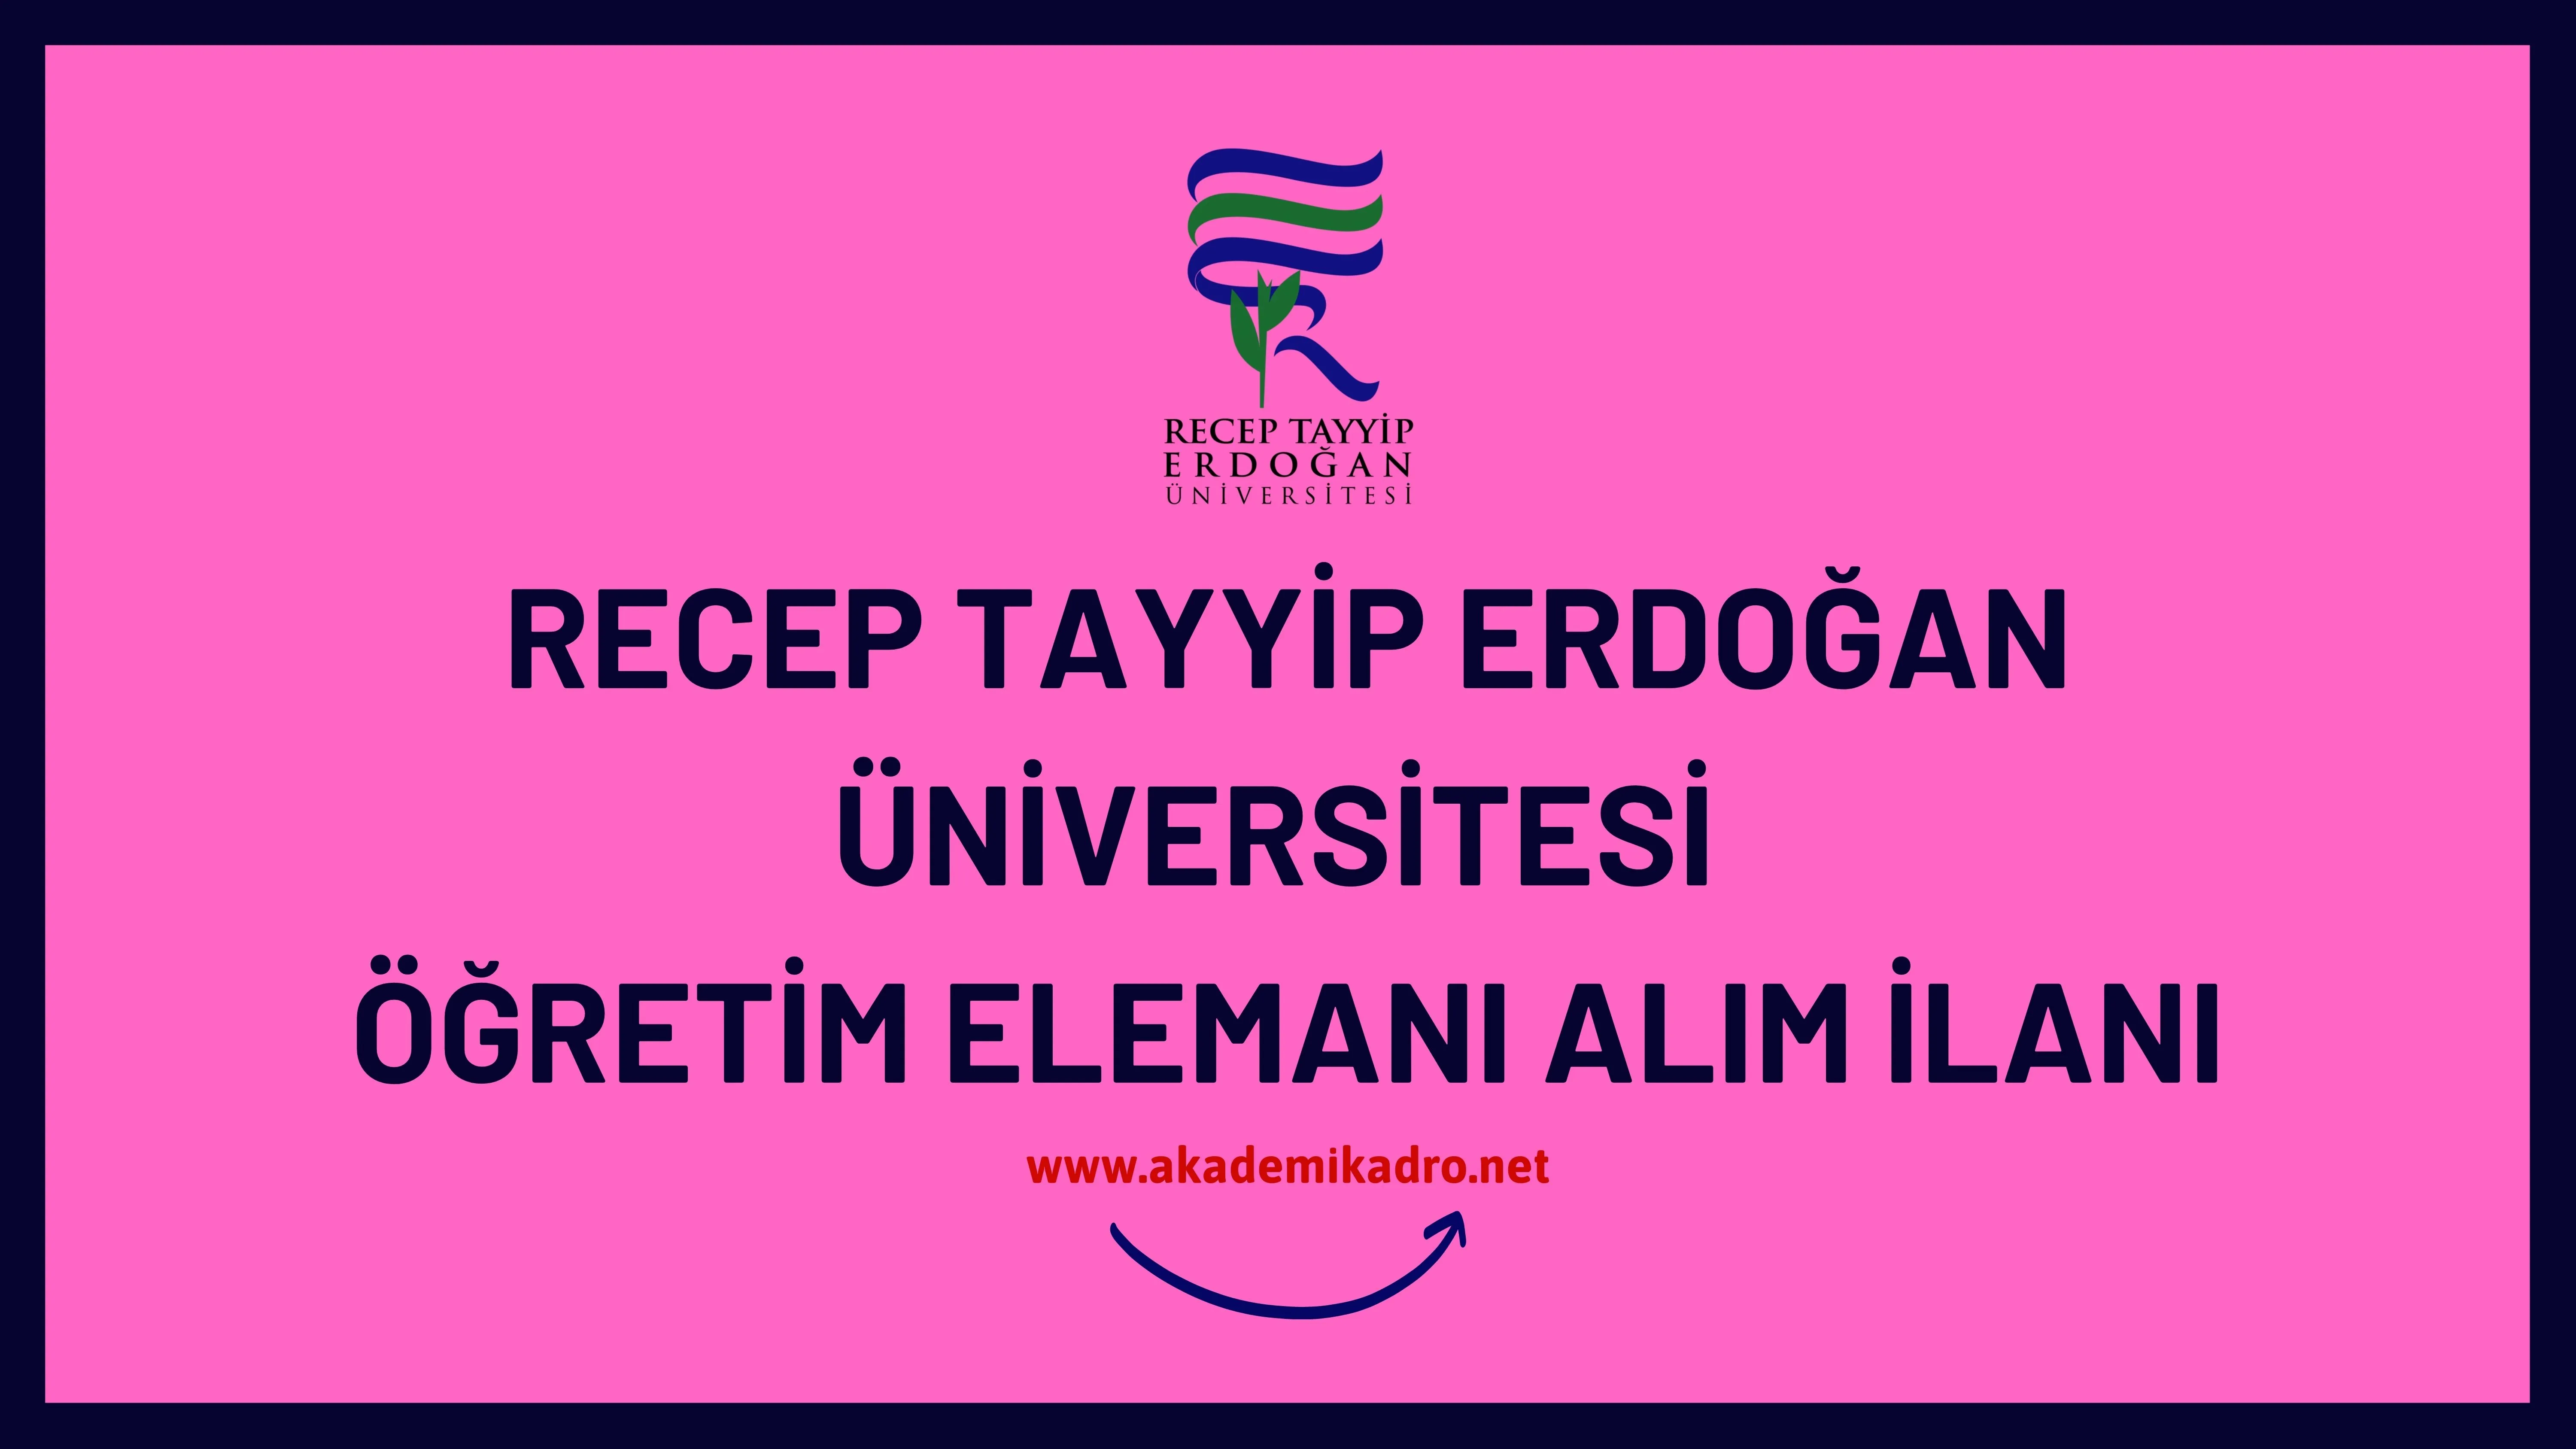 Recep Tayyip Erdoğan Üniversitesi 5 Araştırma görevlisi, 5 Öğretim görevlisi ve 49 öğretim üyesi alacak.